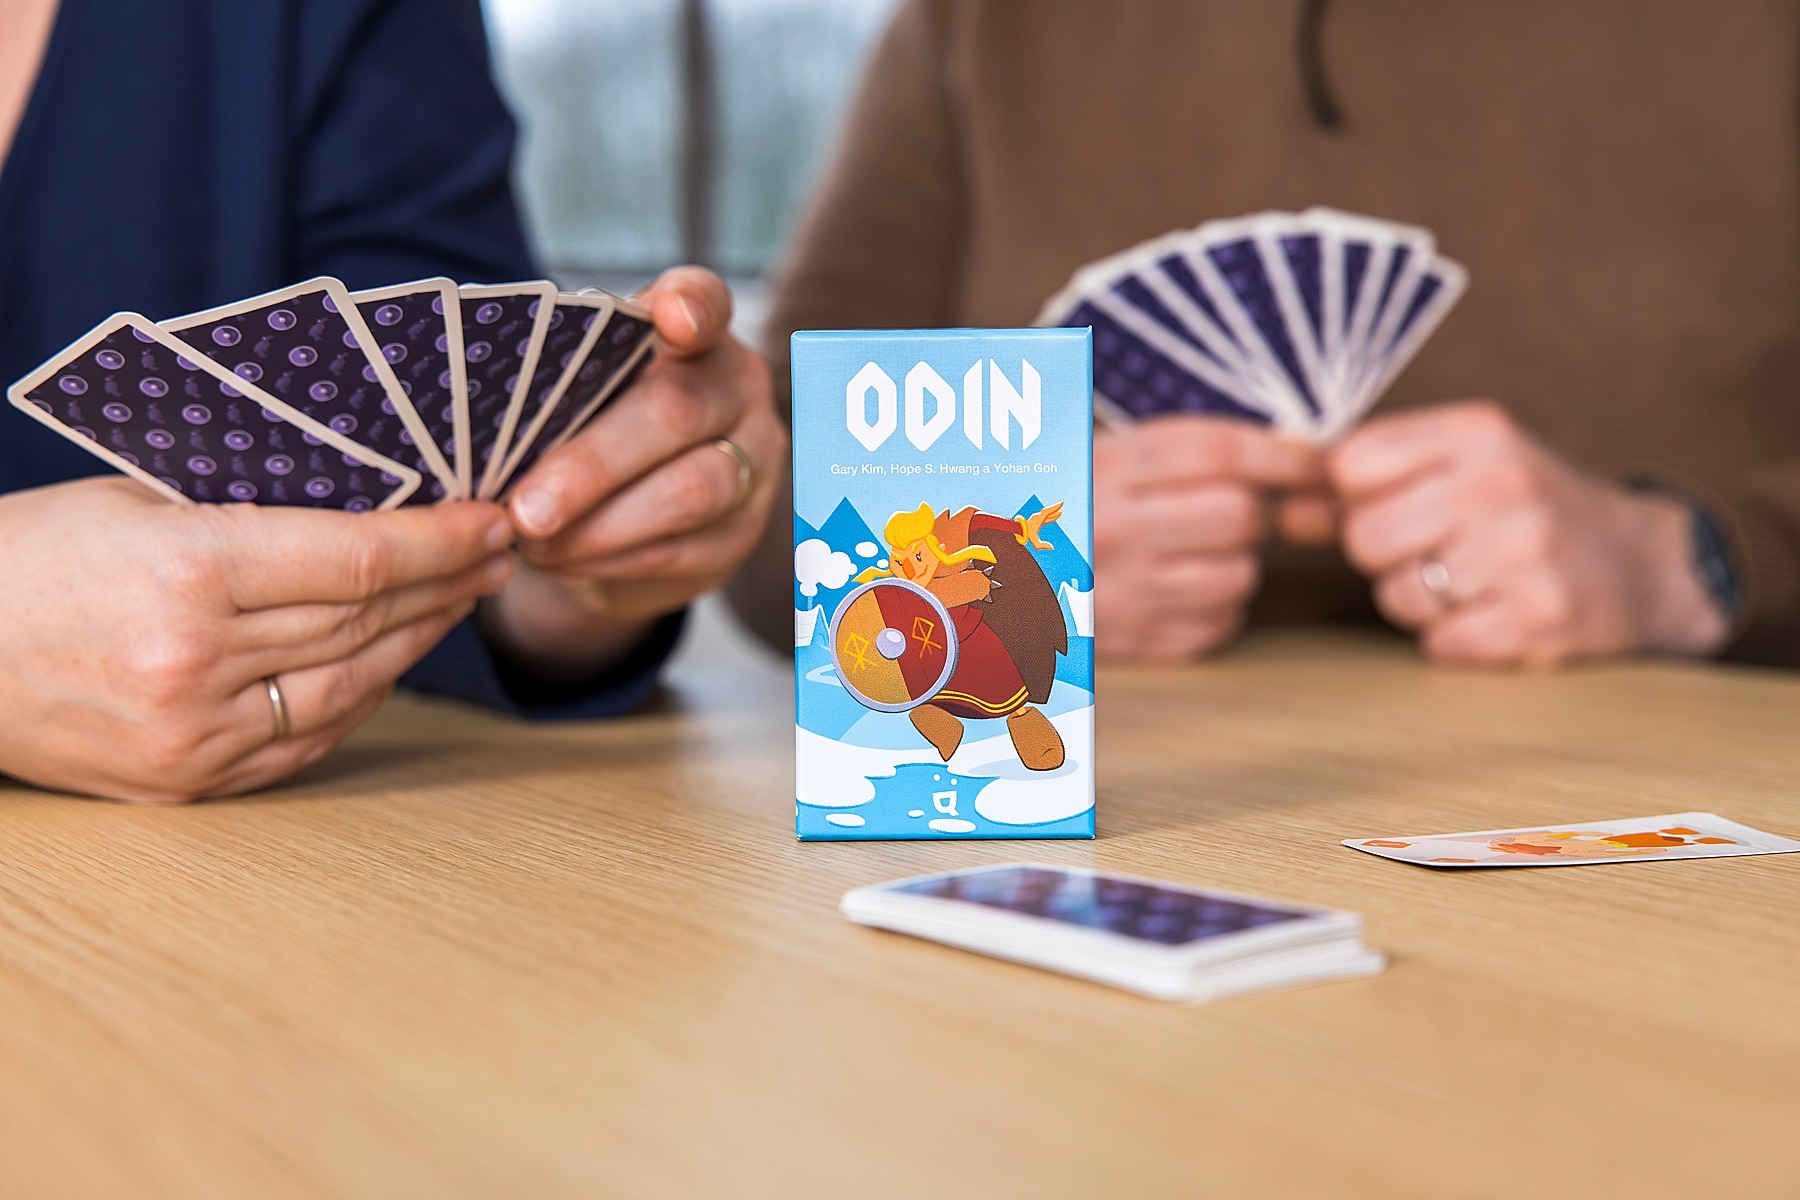 Odin Helvetiq jeu de société boardgame